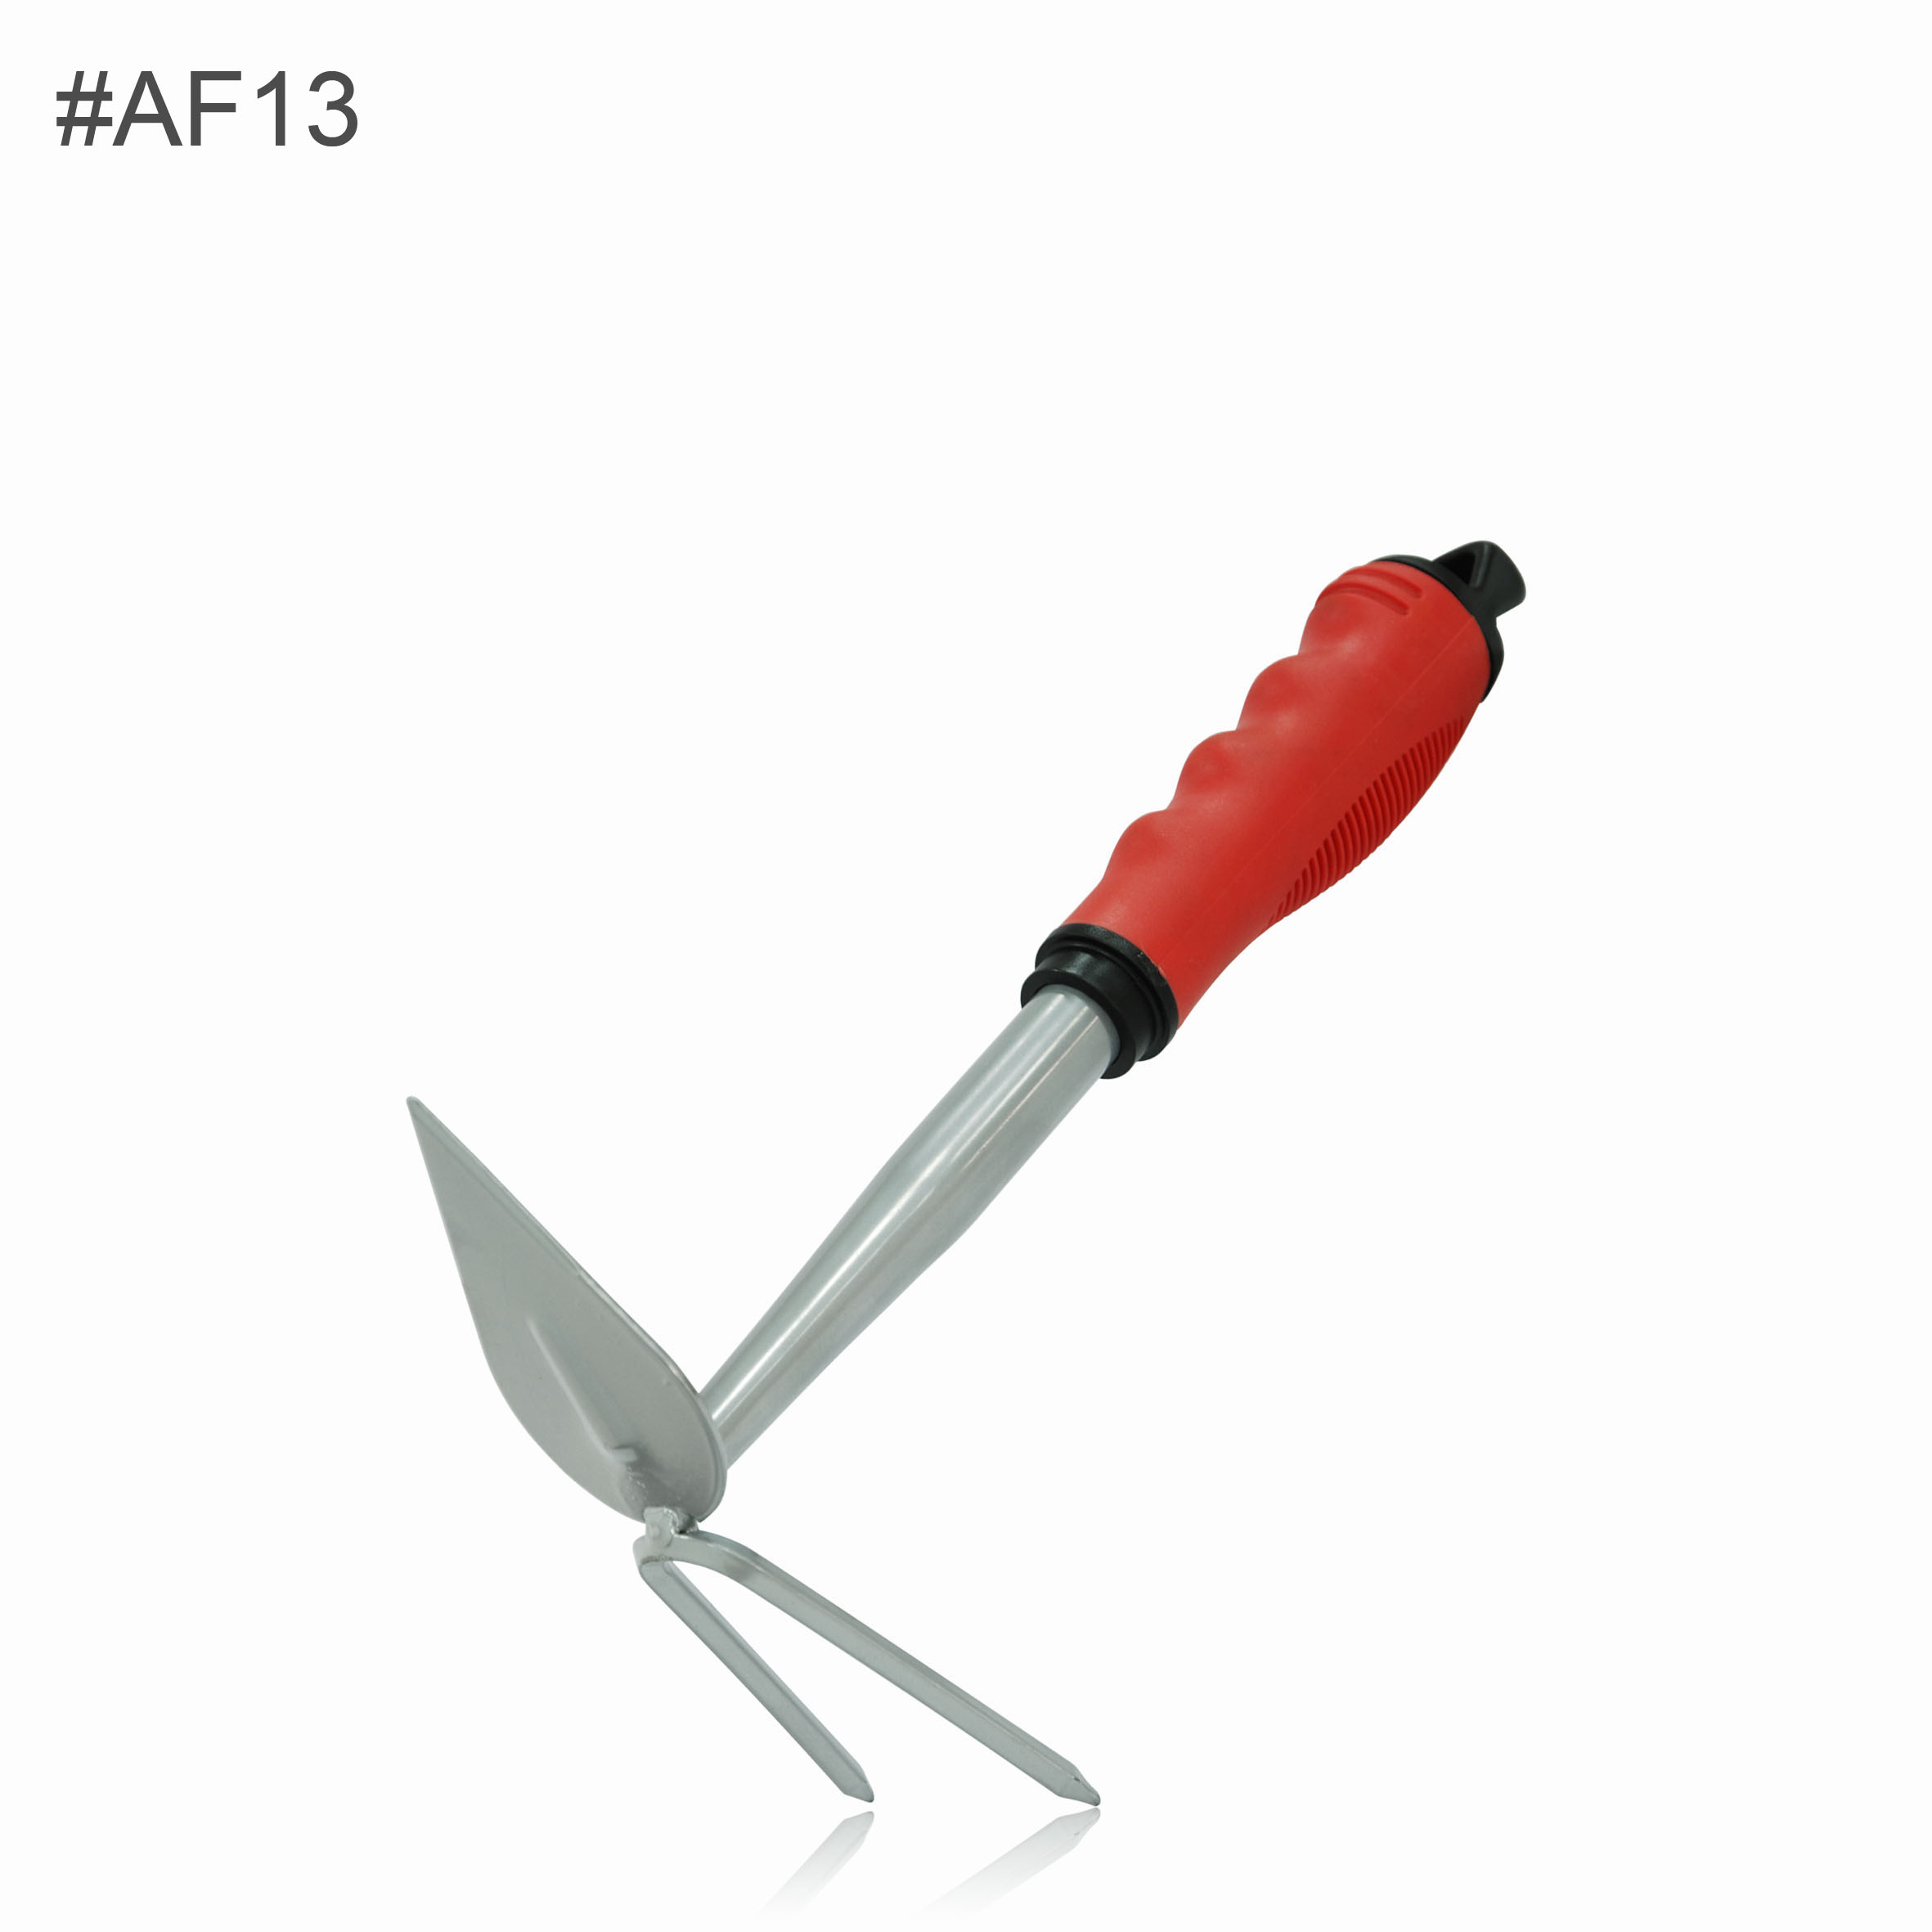 AF13